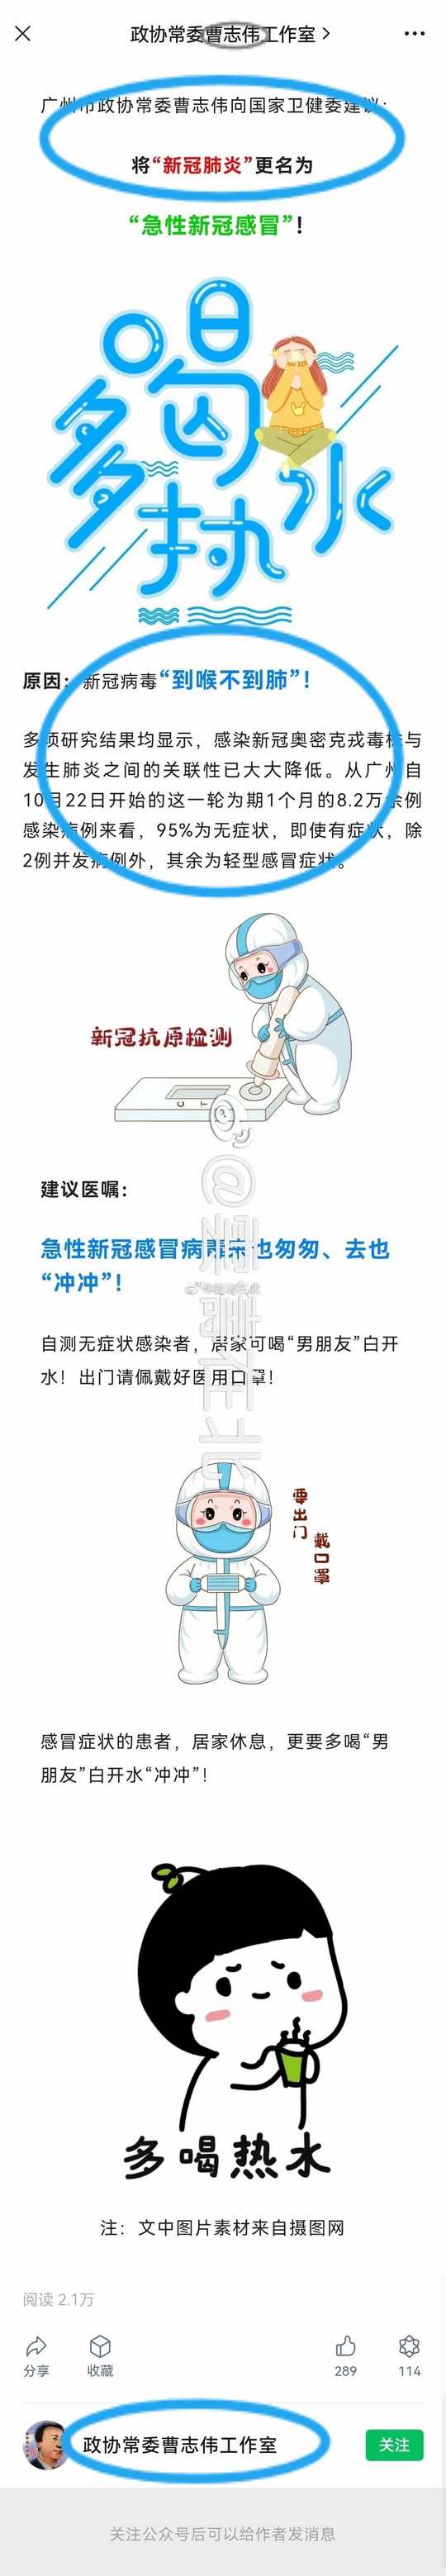 广州市政协常委向国家卫健委建议将新冠肺炎更名为急性新冠感冒